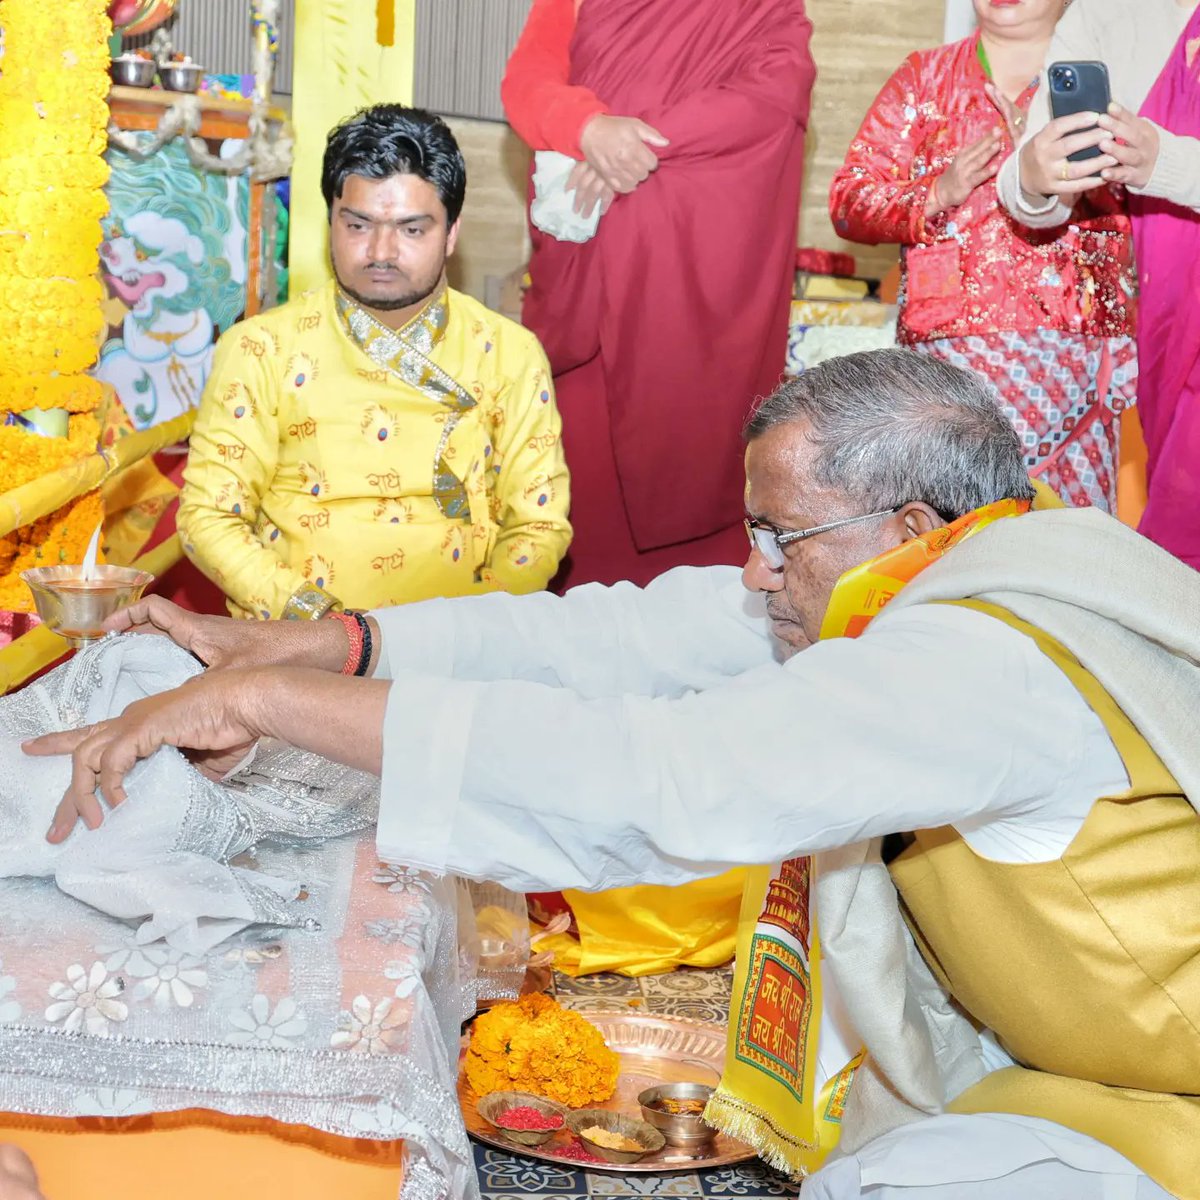 आज वसंत पंचमी के अवसर पर 5 मील,गंगटोक स्थित सरस्वती डोलमा मंदिर में पूजा अर्चना कर राज्यवासियों के सुख, शांति एवं समृद्धि के लिए प्रार्थना की | @rashtrapatibhvn @narendramodi @HMOIndia @PIB_India @PSTamangGolay @PMOIndia @sikkimgovt